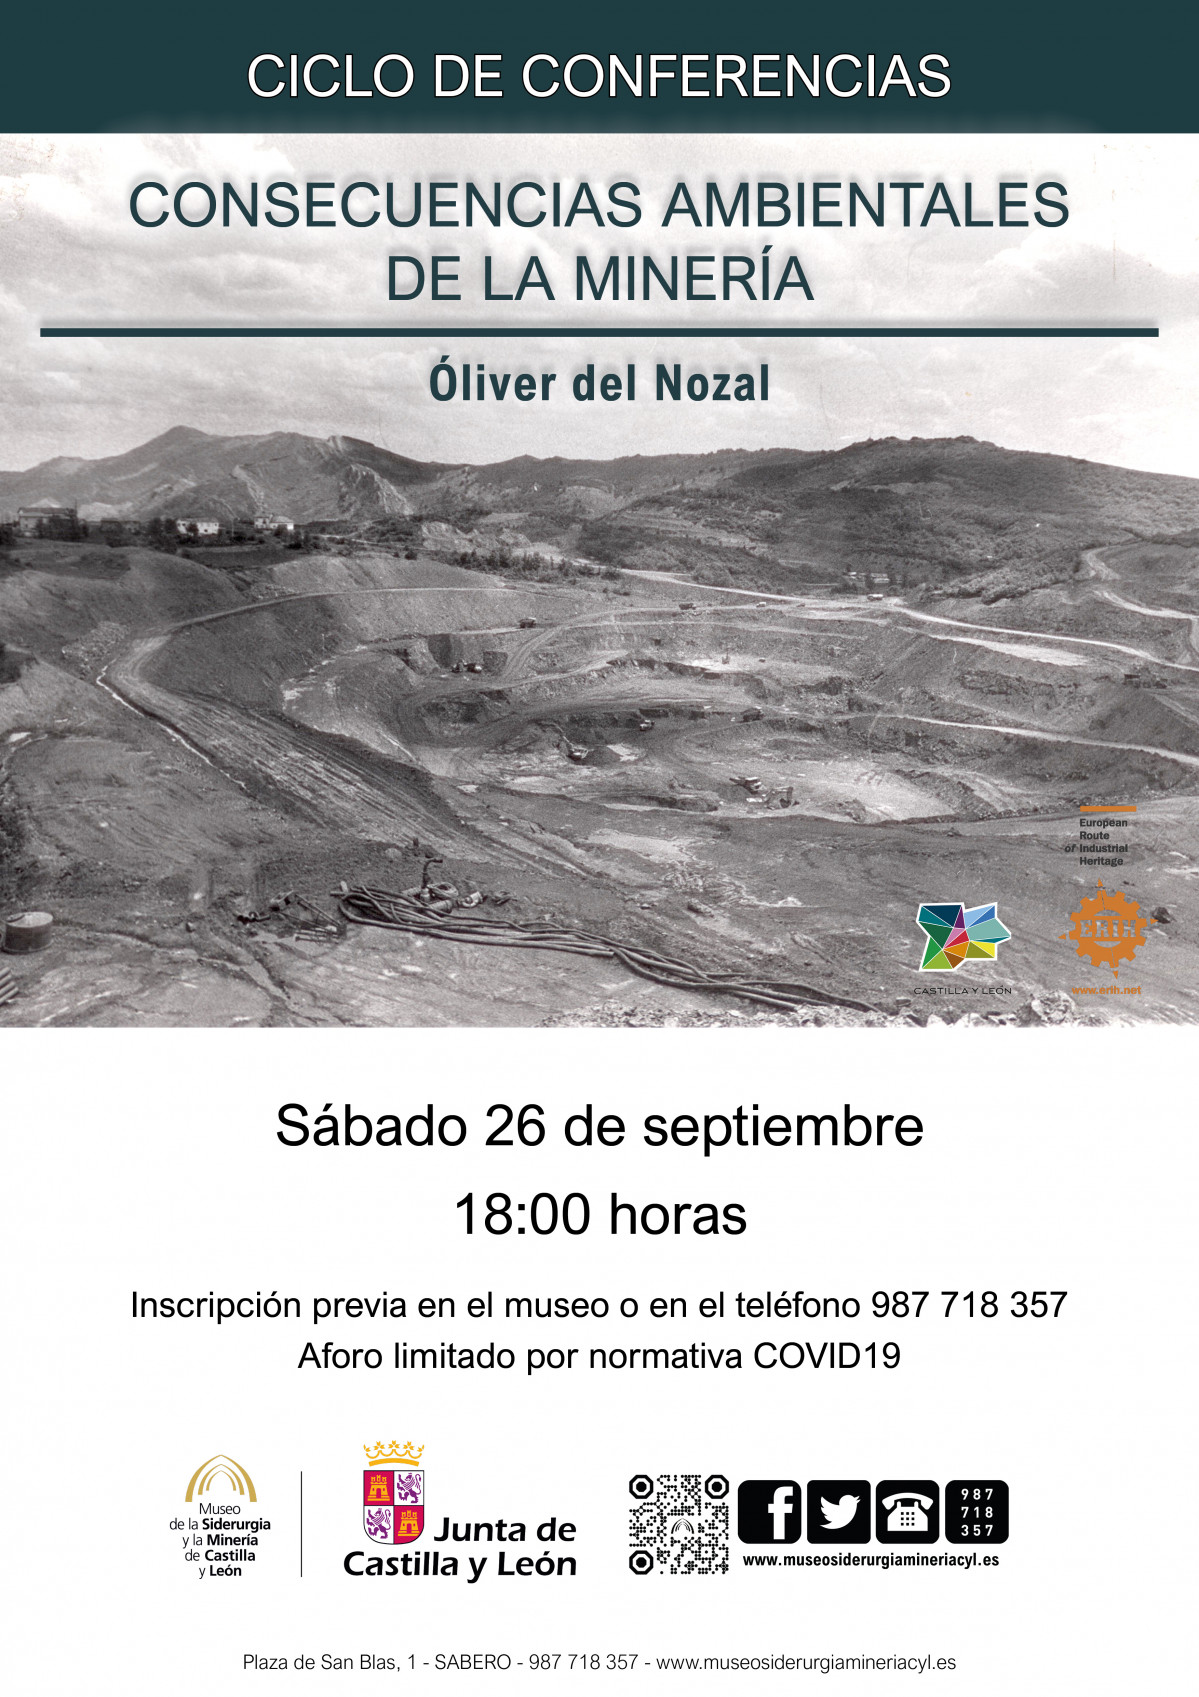 Consecuencias ambientales de la mineria